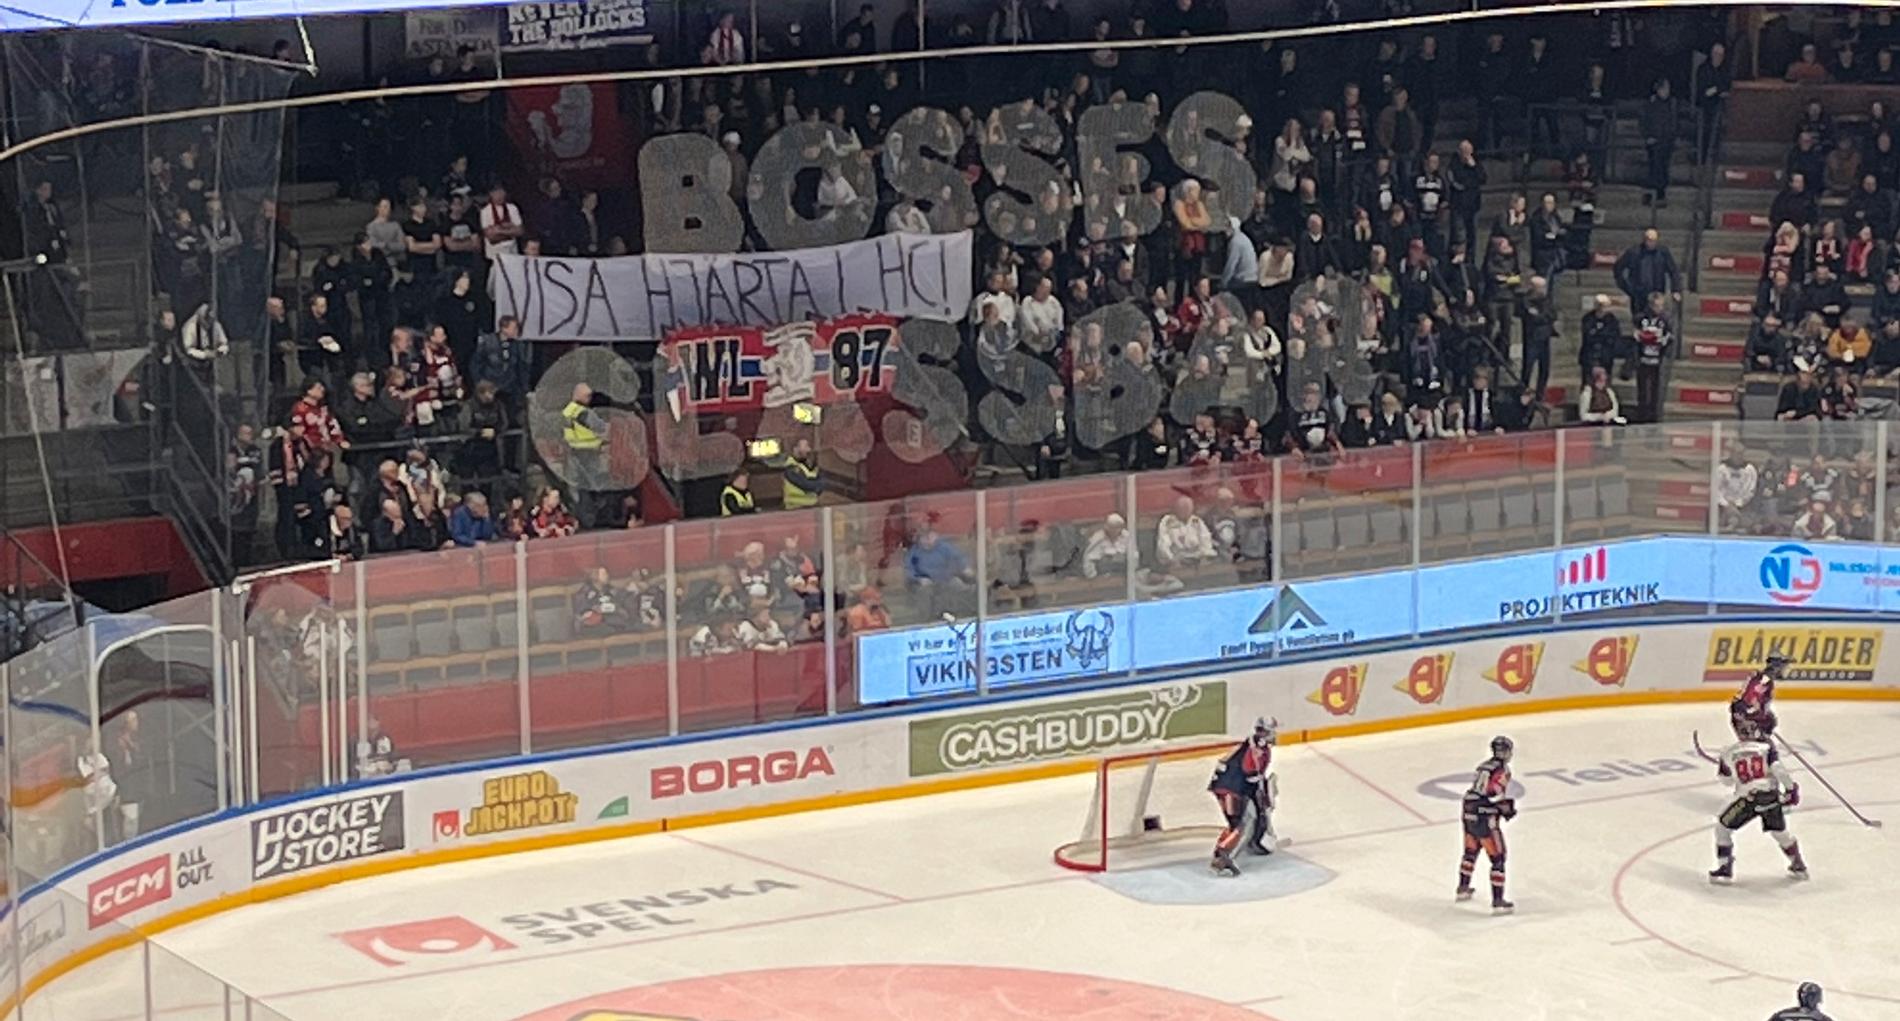 LHC-fansen visade sin besvikelse under matchen mot Malmö.